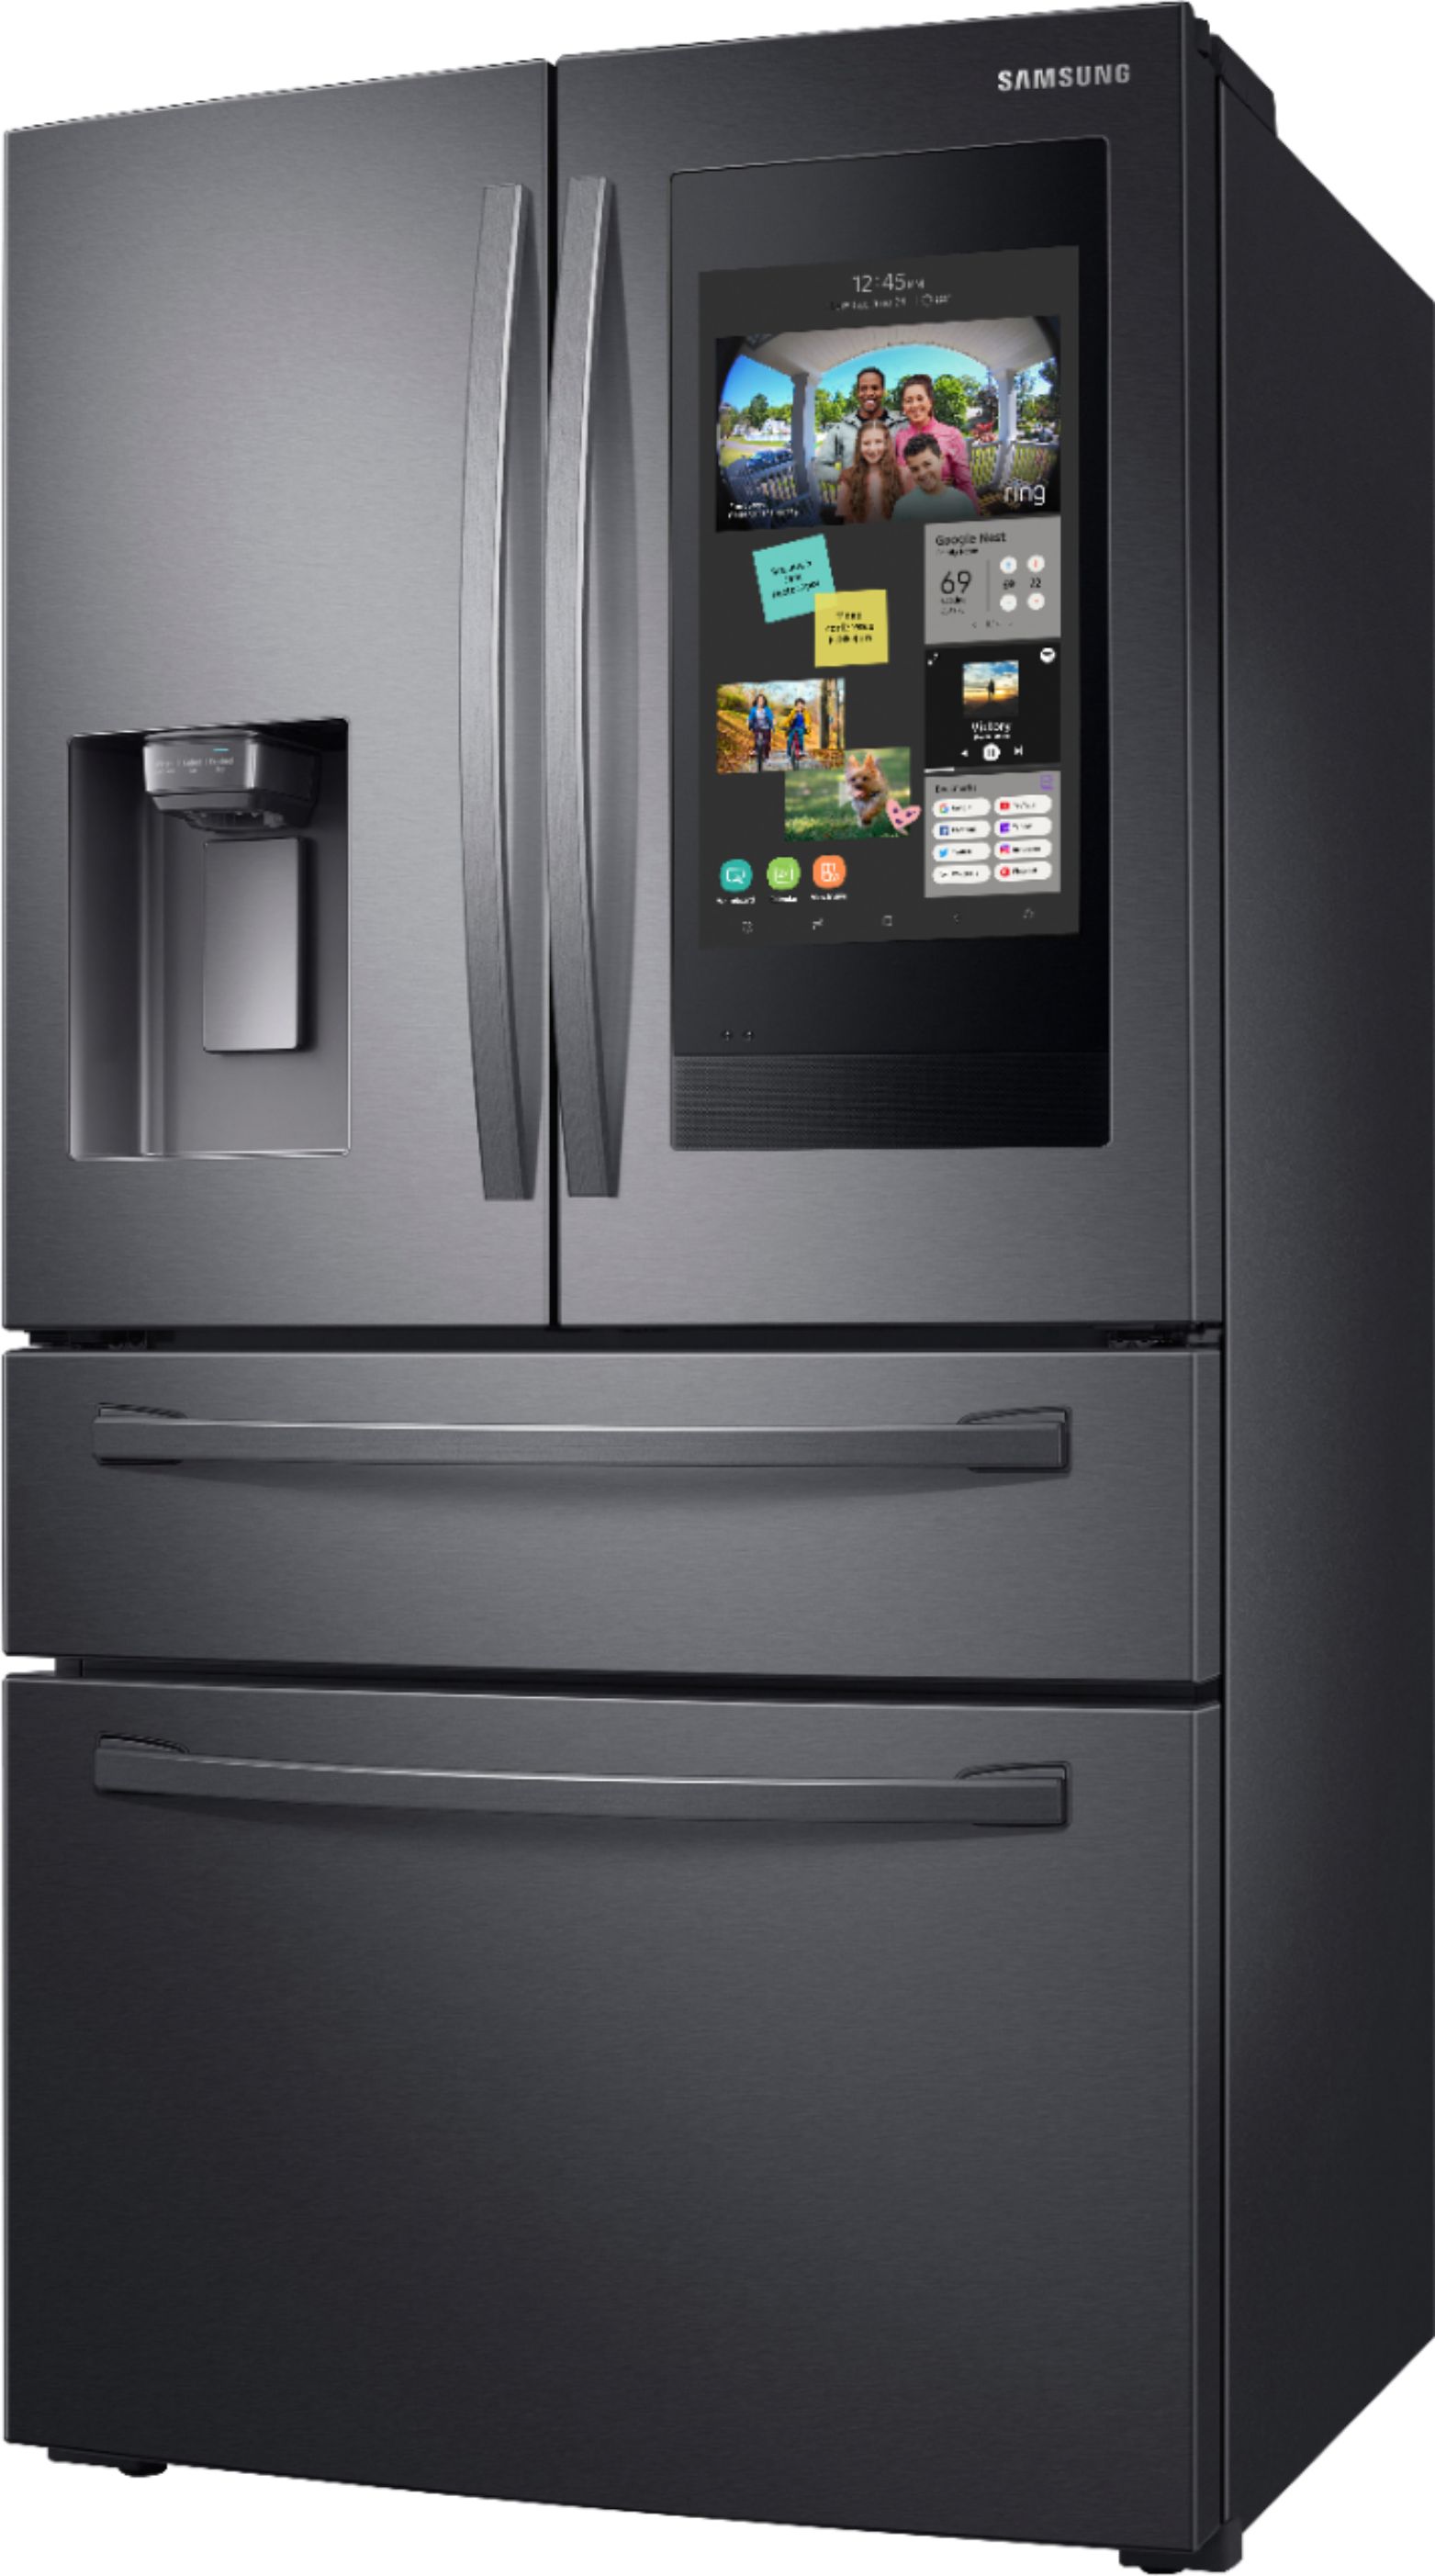 Left View: Samsung - Family Hub 22.2 Cu. Ft. 4-Door French Door Counter-Depth Fingerprint Resistant Refrigerator - Black stainless steel